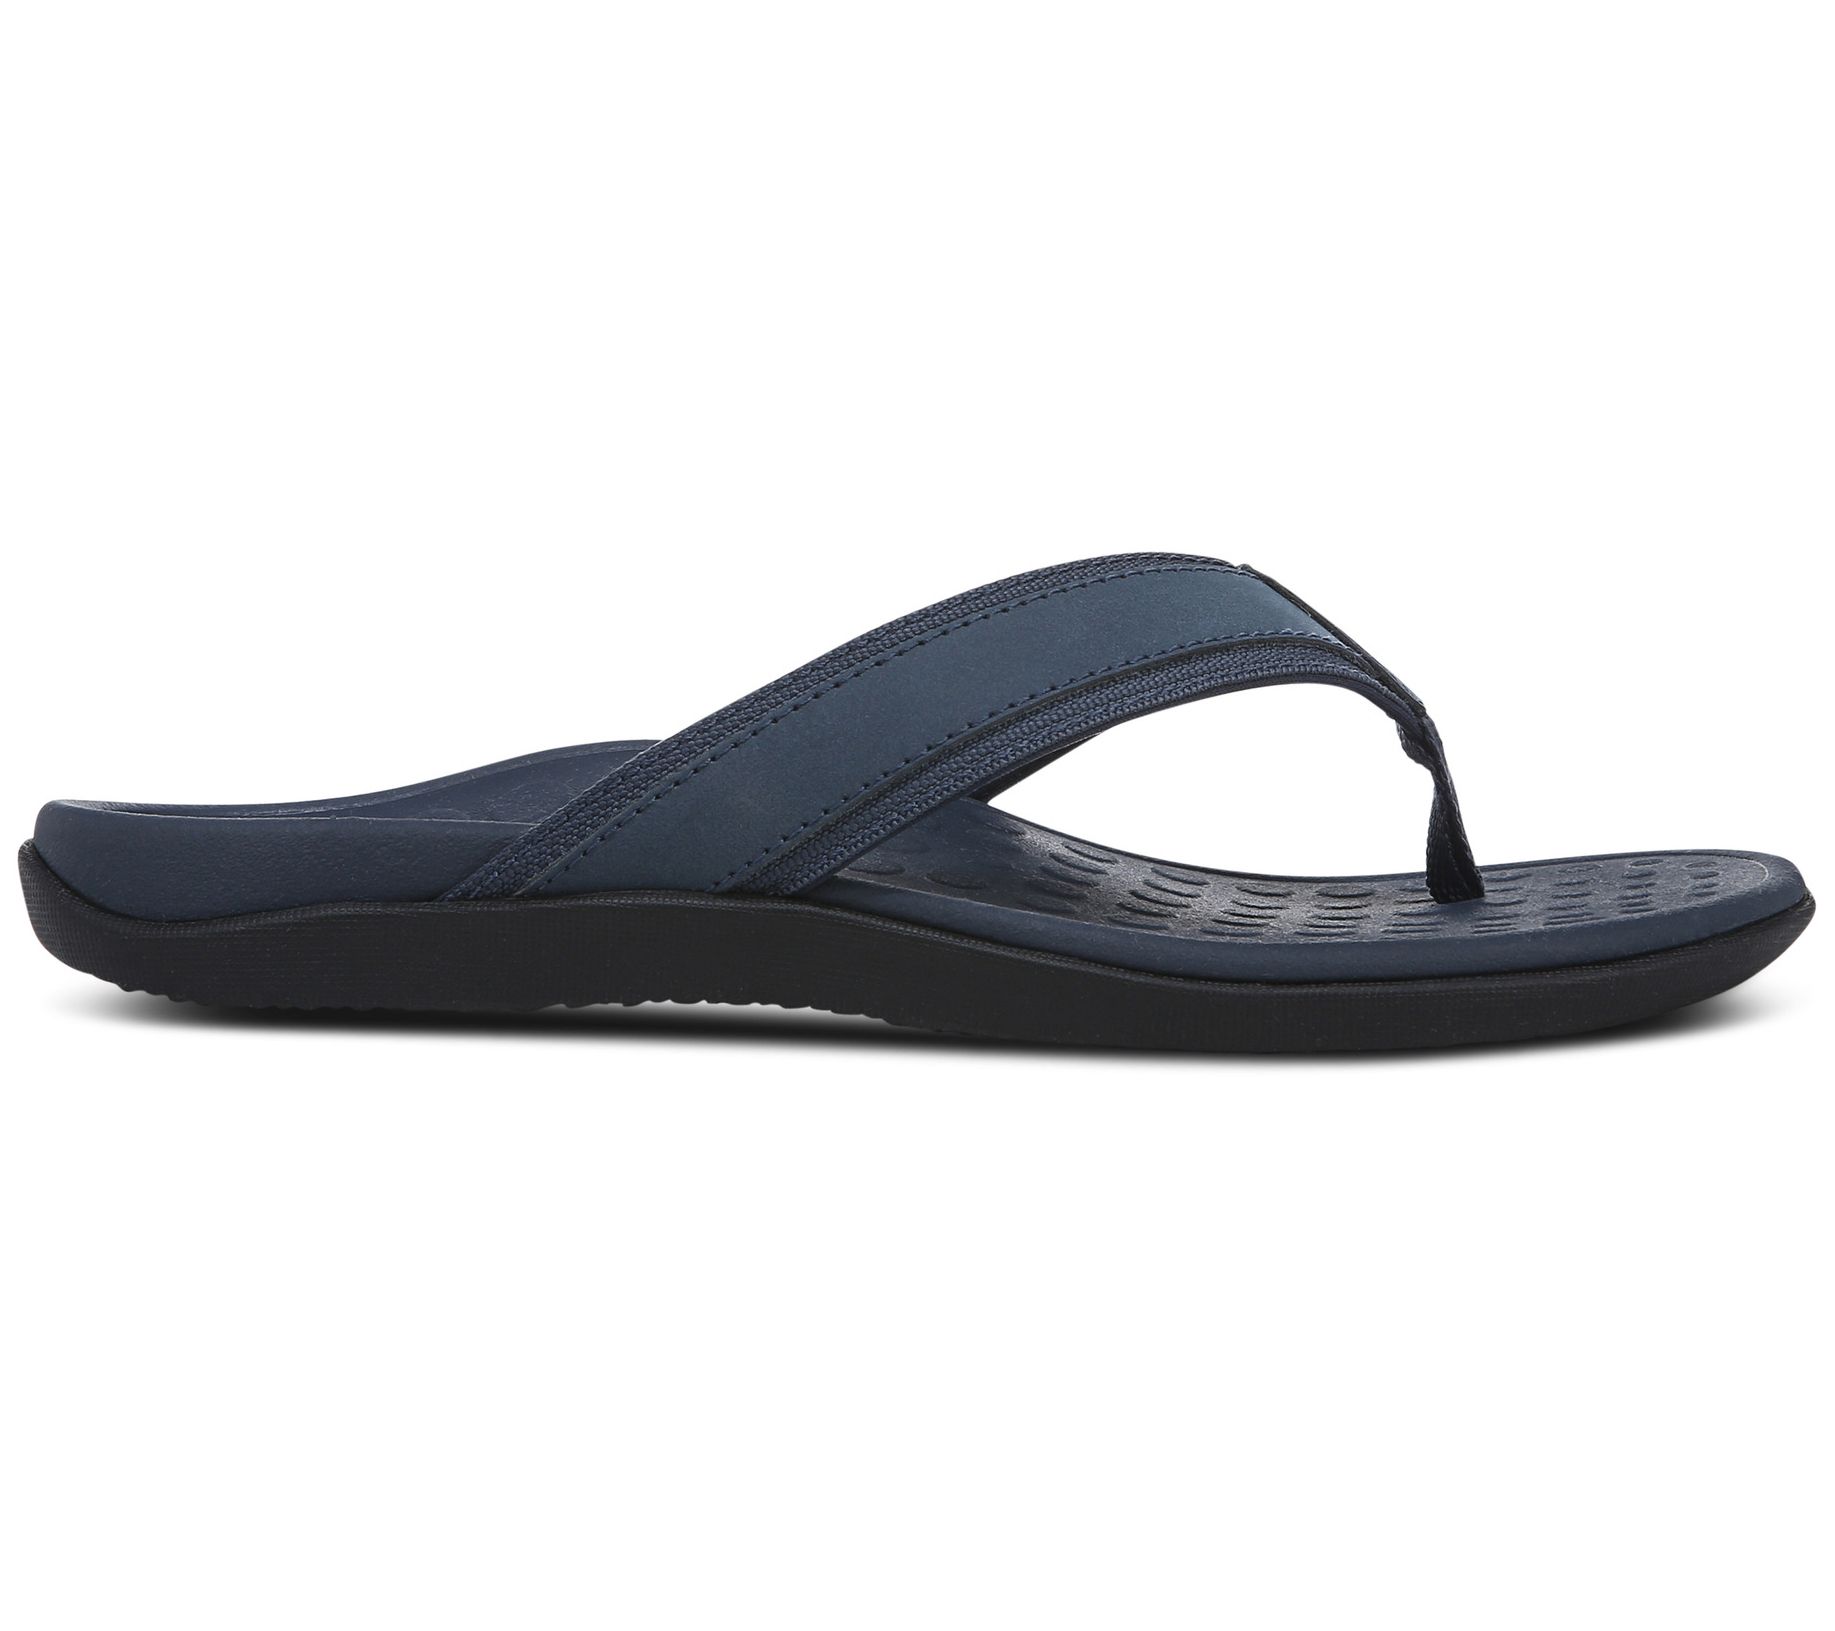 Vionic Men's Leather Thong Sandals - Tide - QVC.com